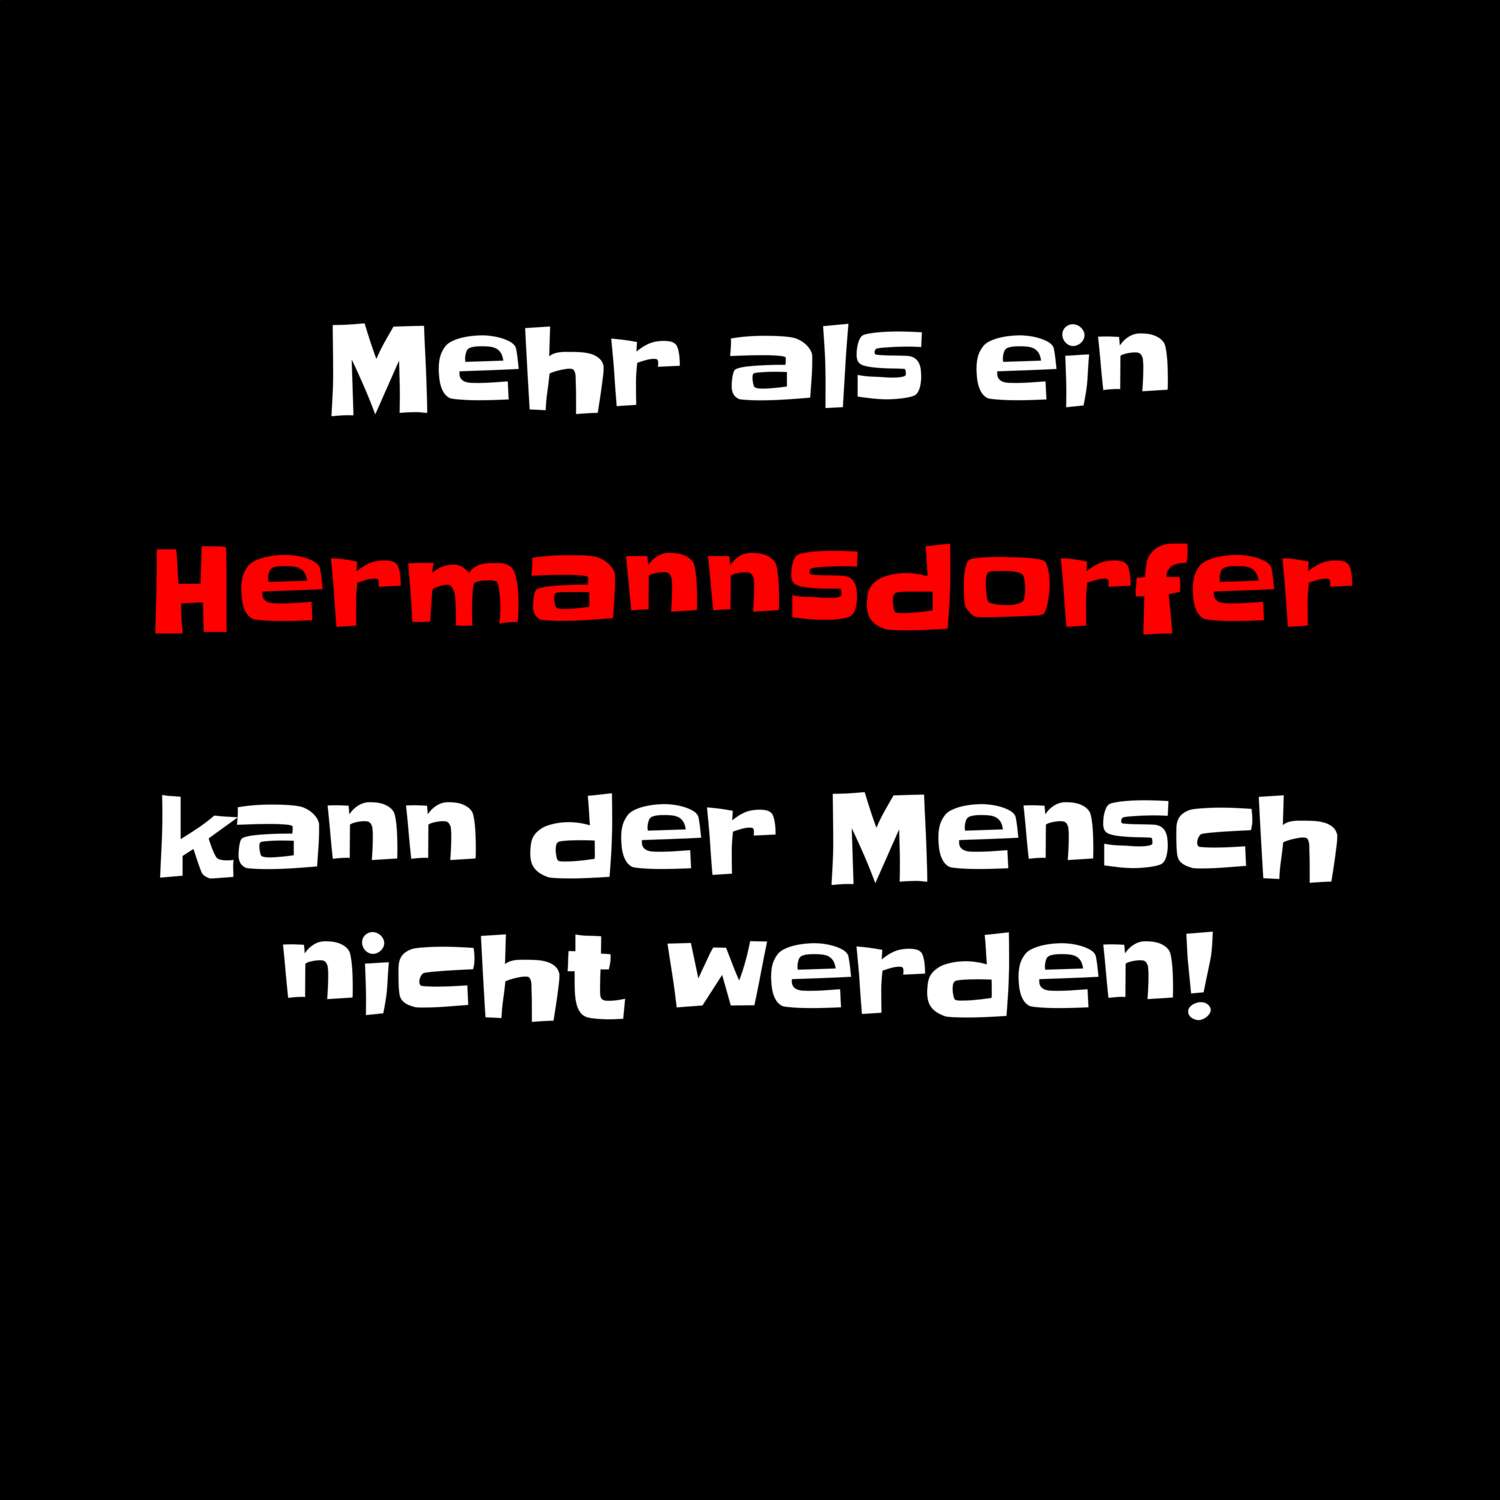 Hermannsdorf T-Shirt »Mehr als ein«